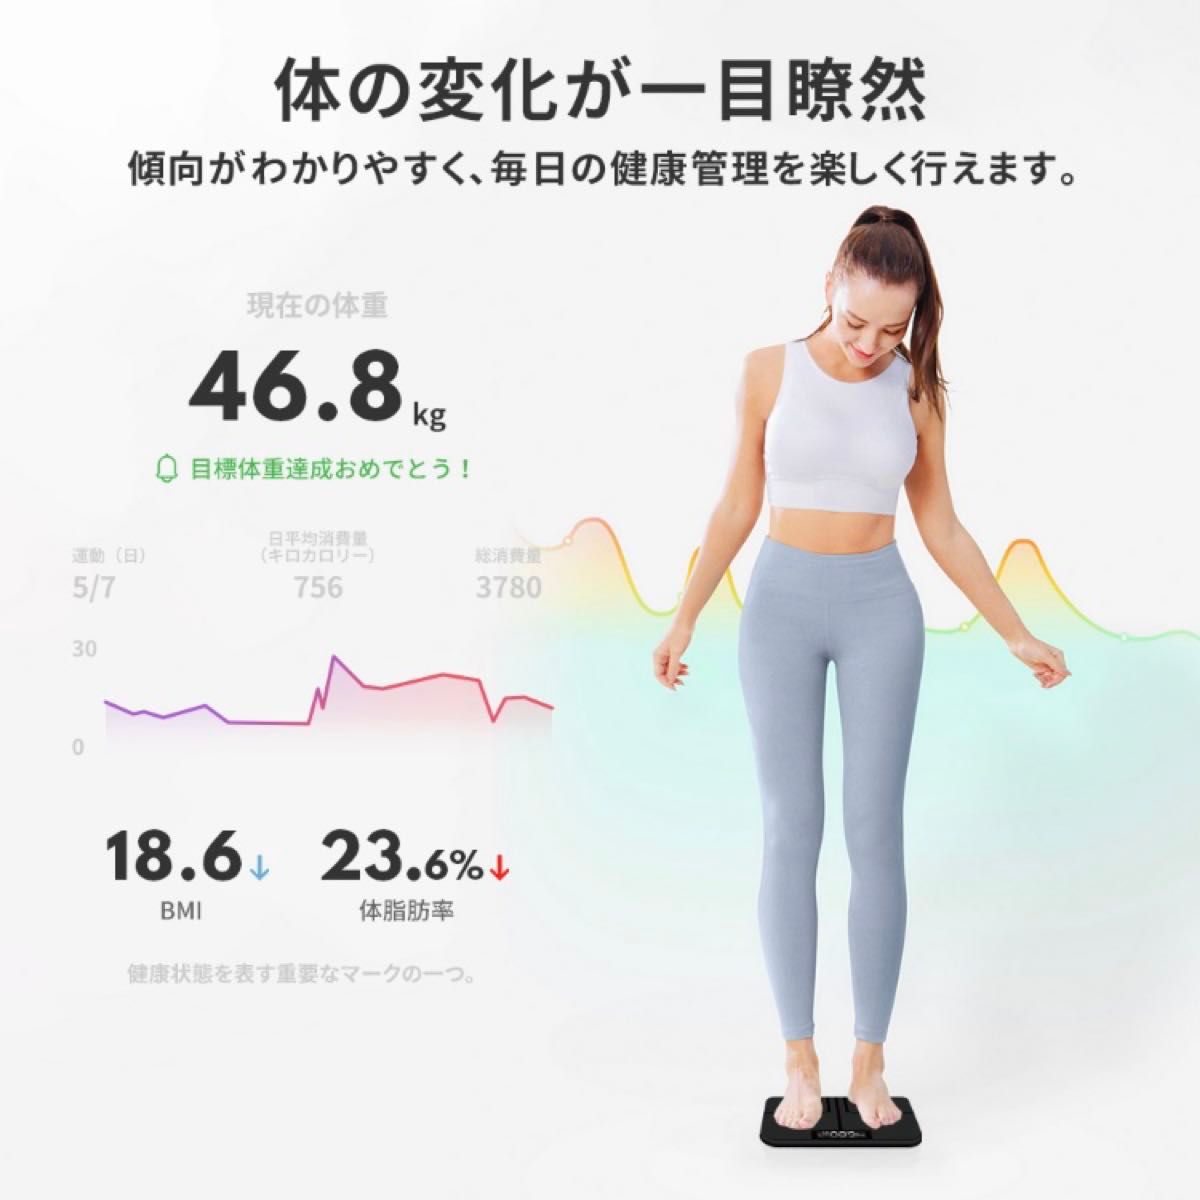 アプリで簡単健康管理!! 体重計 スマホ連動 薄型 ベビーモード搭載